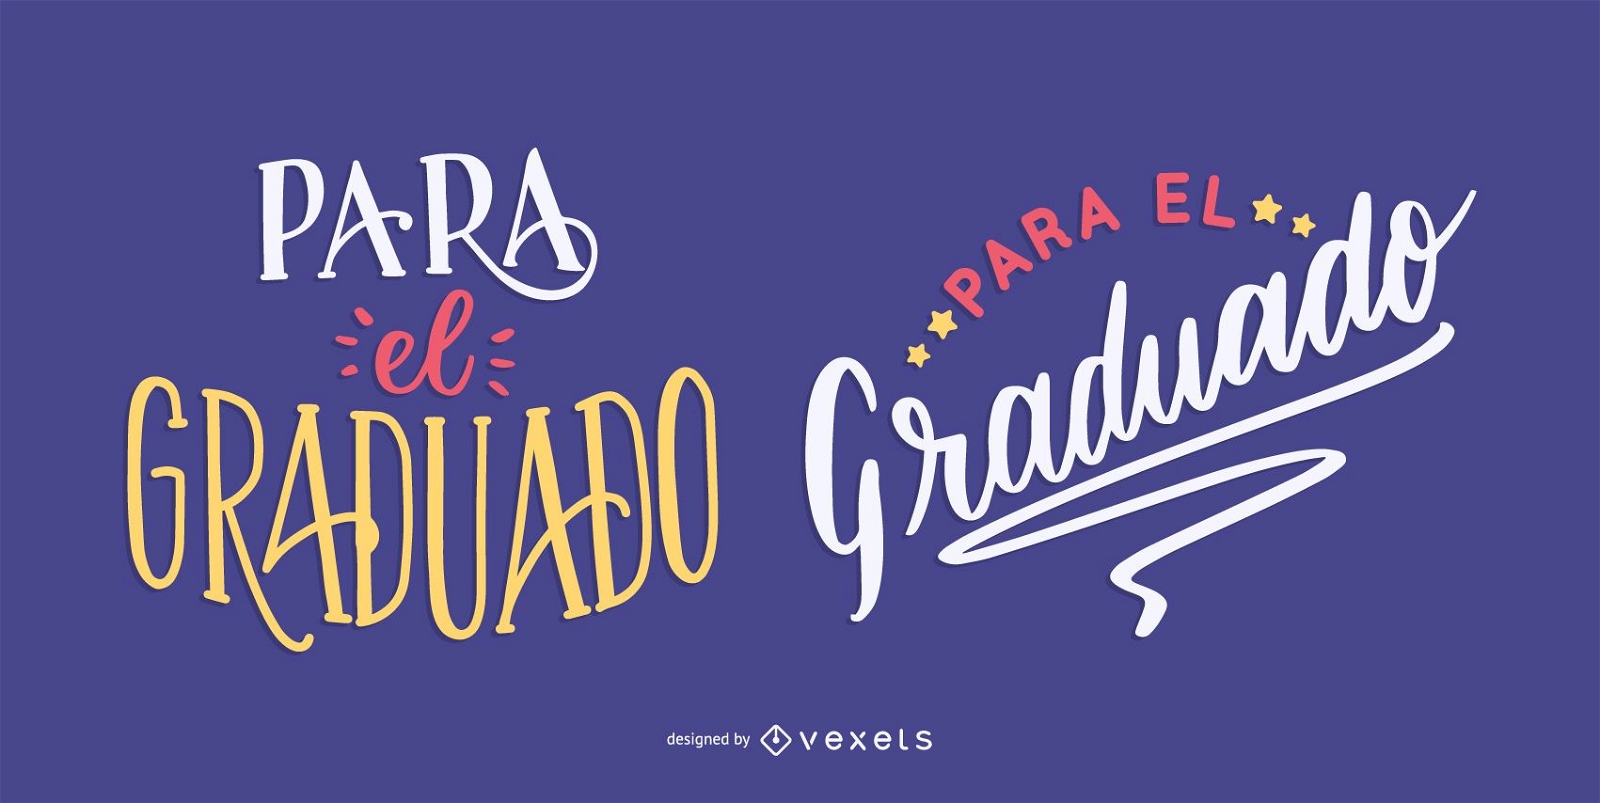 graduates message in spanish